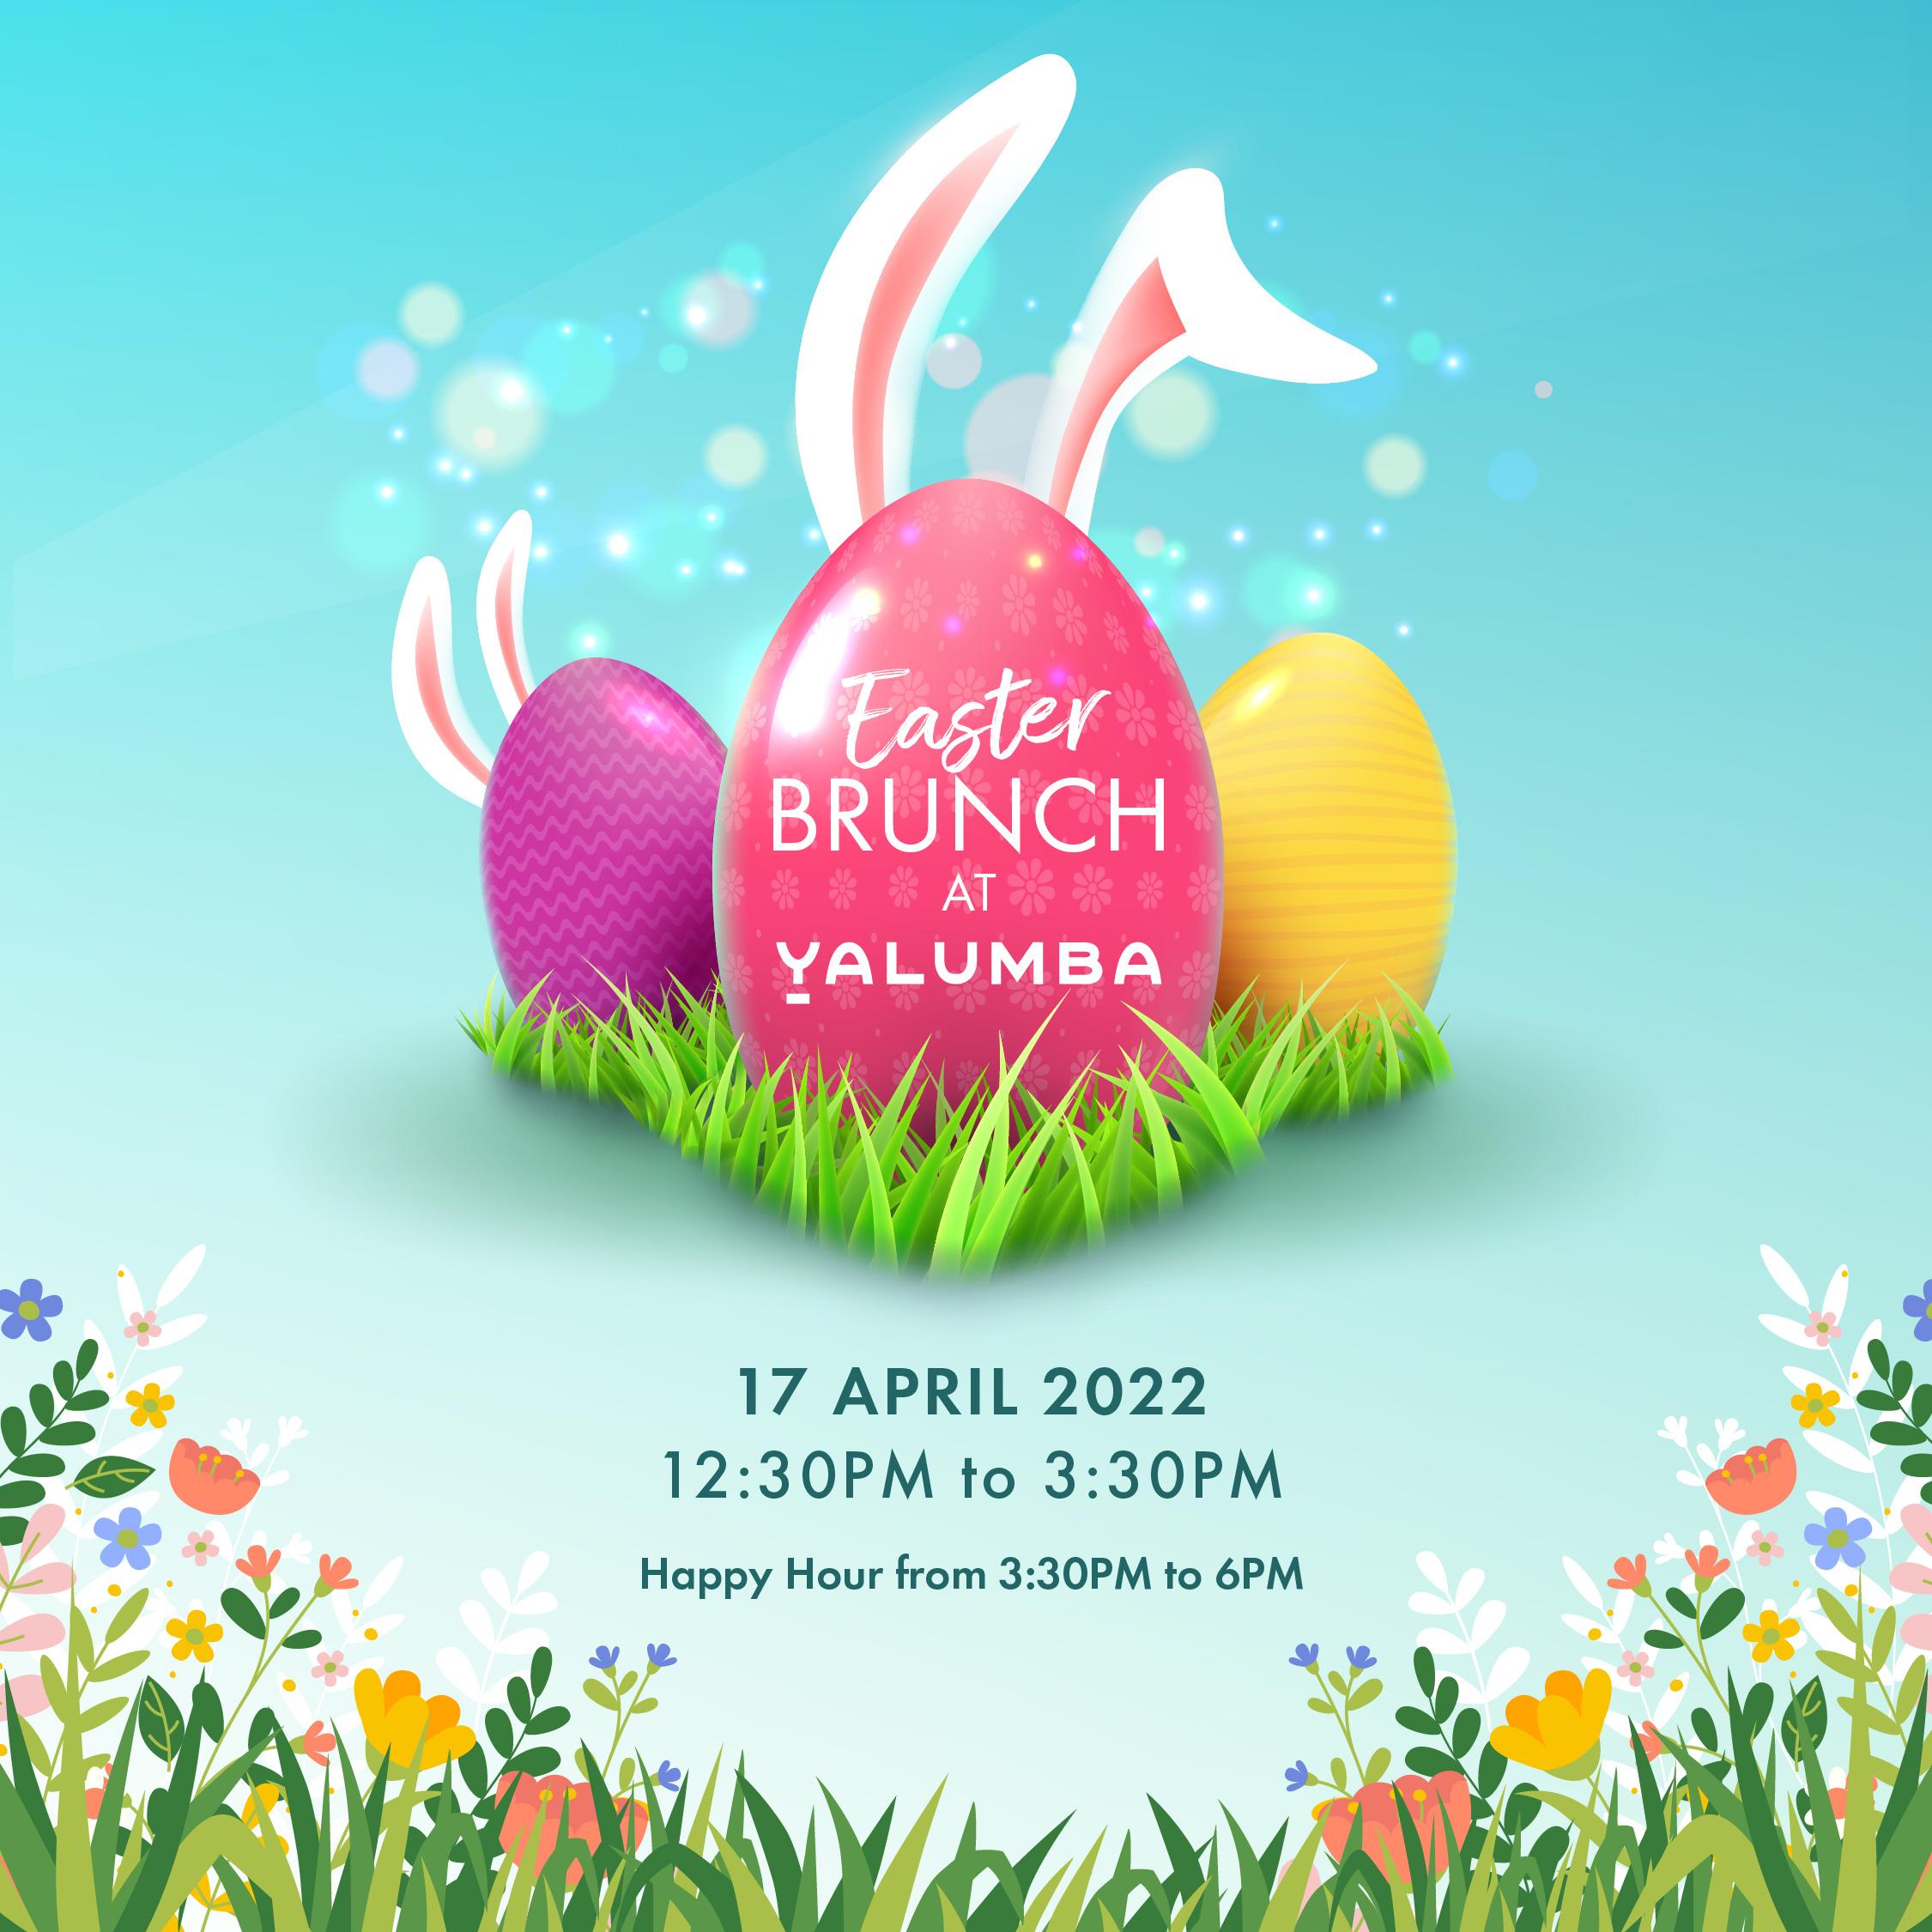 Eggciting Easter celebration awaits at Yalumba